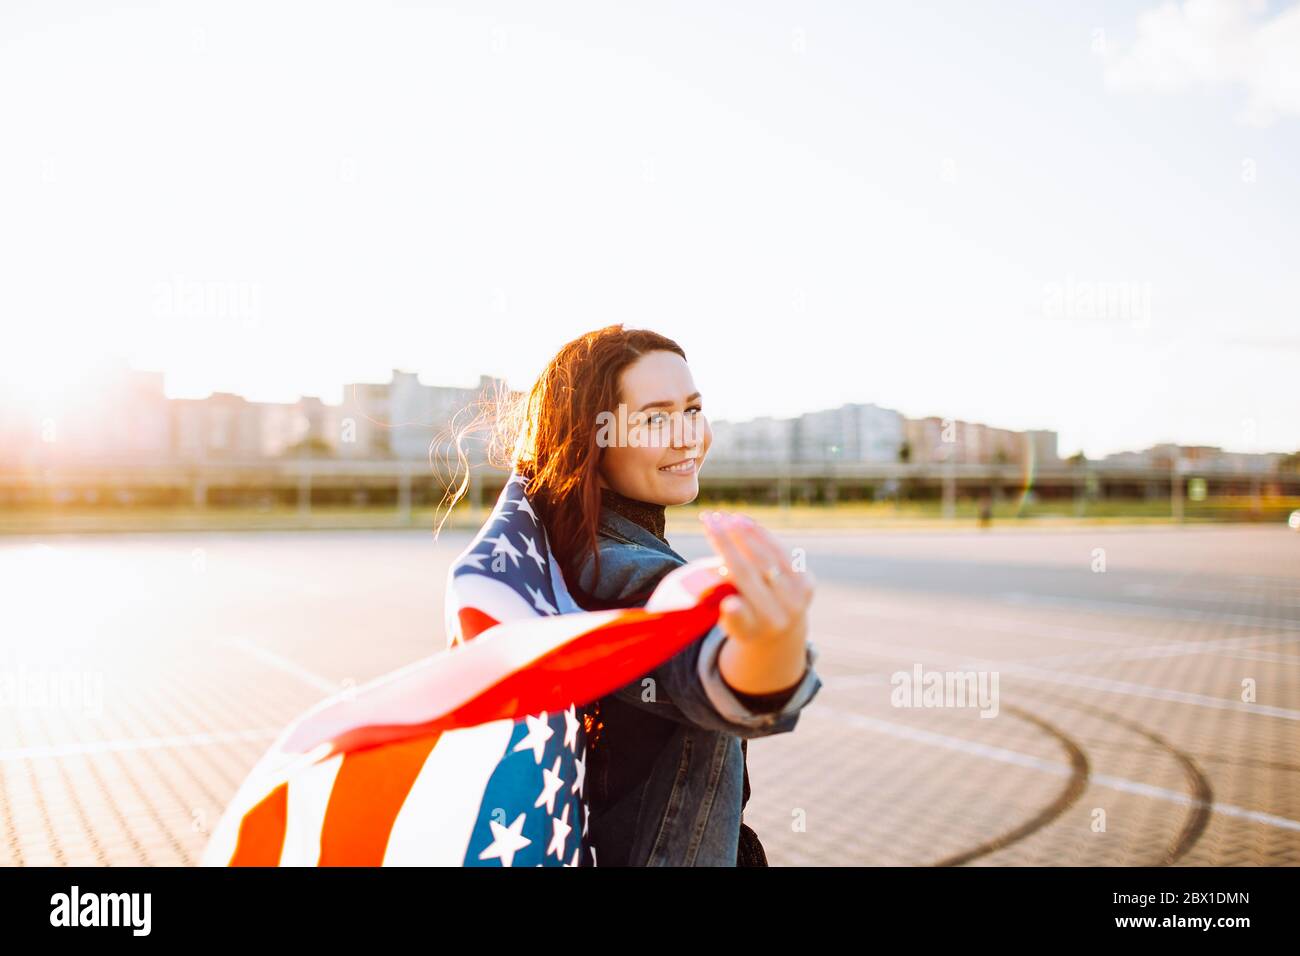 Junge hübsche rothaarige Frau mit nationaler us-Flagge über Sonnenschein gewickelt. Weiche Hintergrundbeleuchtung. Unabhängigkeitstag, amerikanischer Traum, Freiheitskonzept. Stockfoto